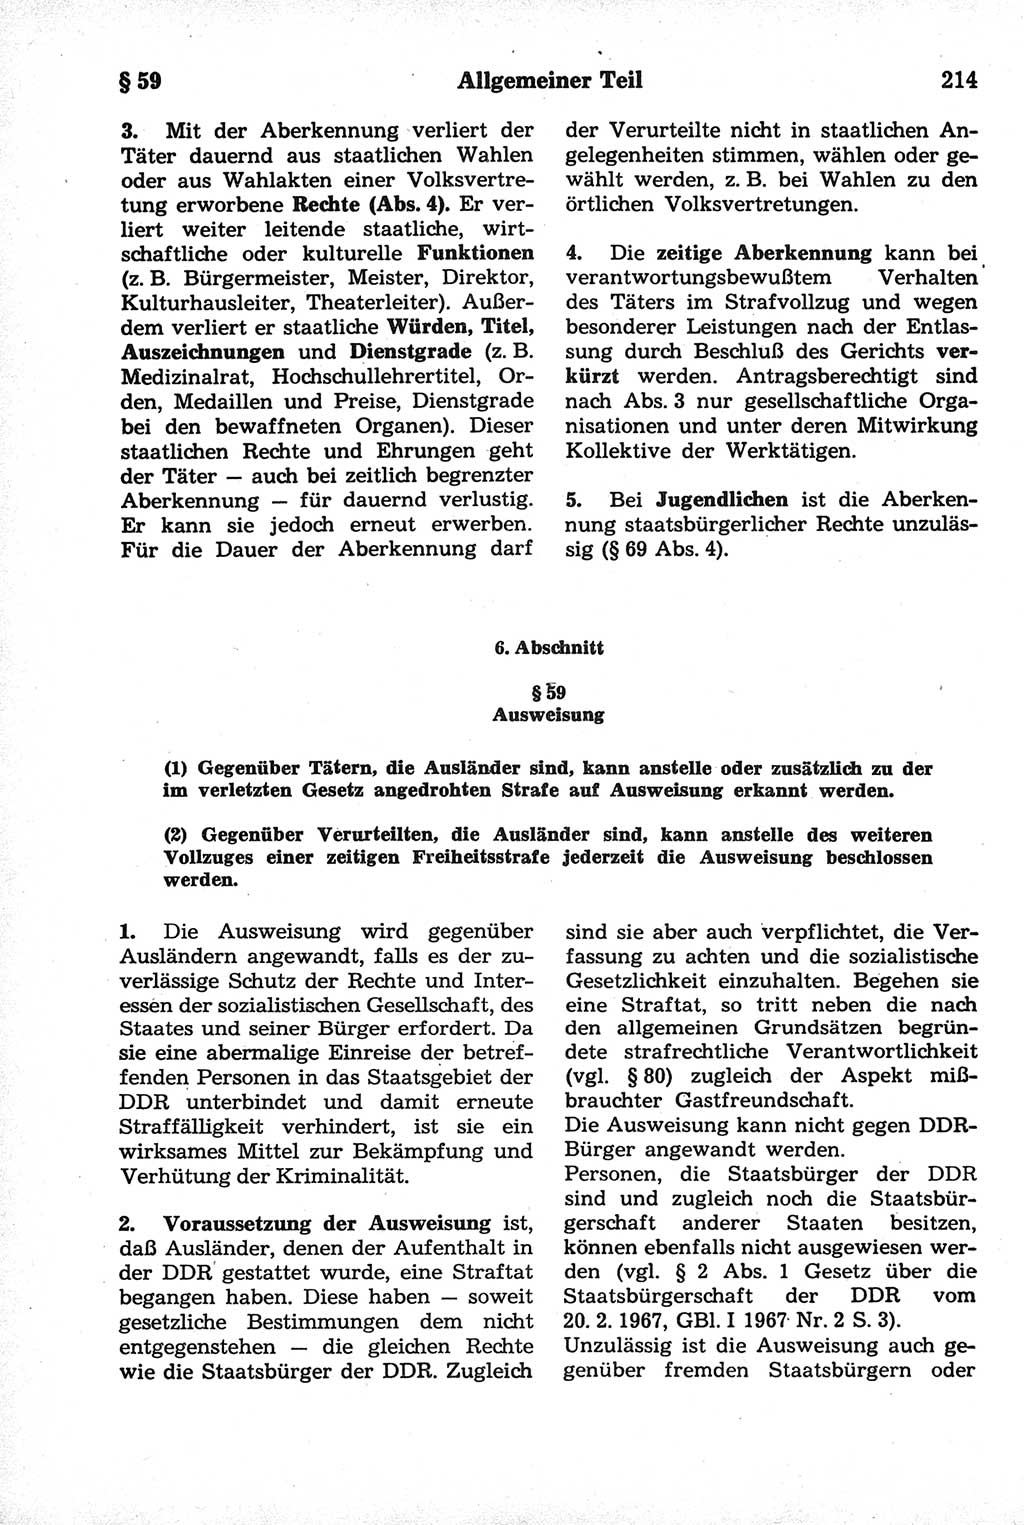 Strafrecht der Deutschen Demokratischen Republik (DDR), Kommentar zum Strafgesetzbuch (StGB) 1981, Seite 214 (Strafr. DDR Komm. StGB 1981, S. 214)